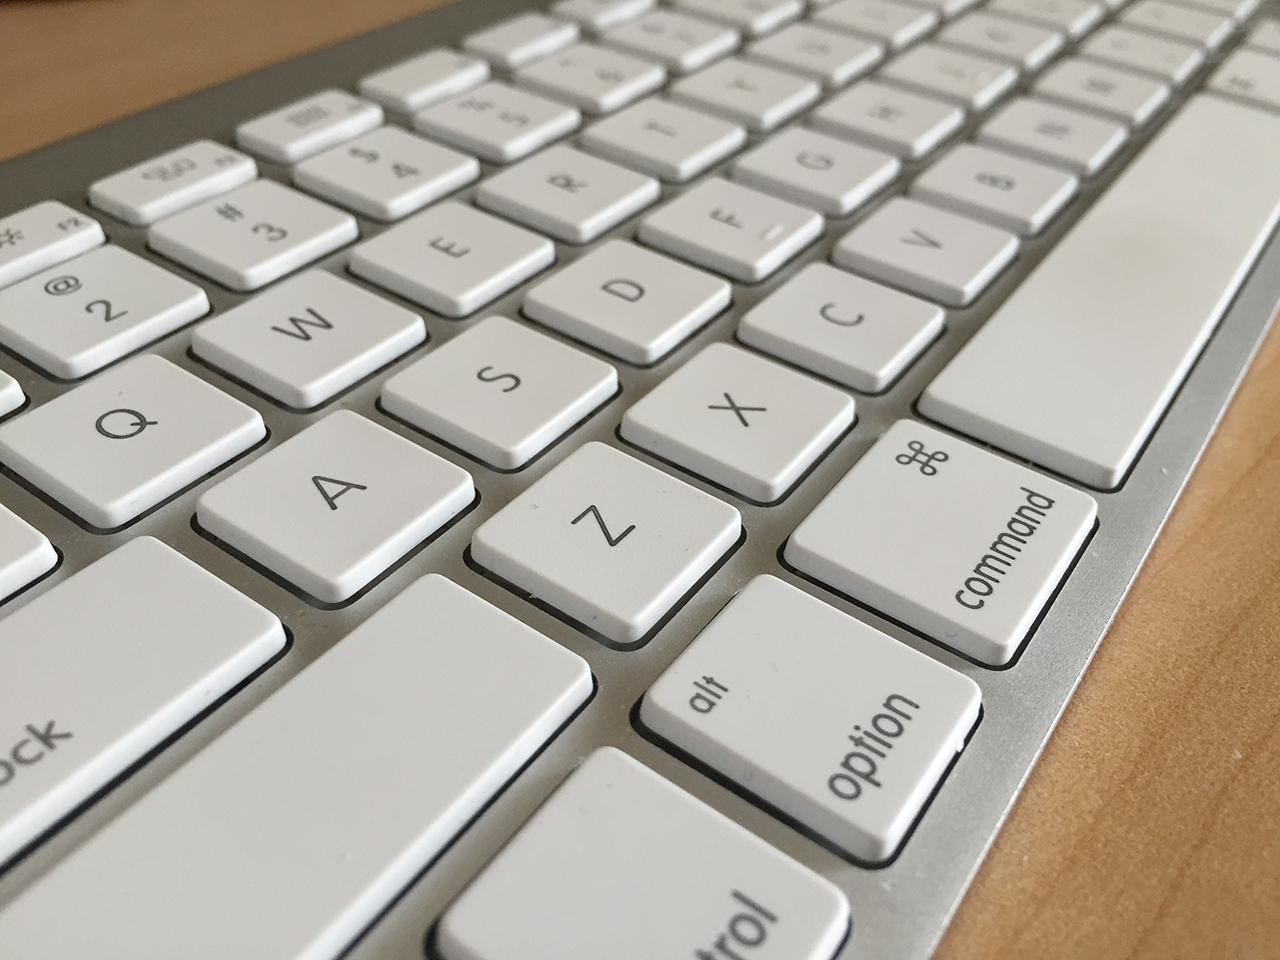 clean mac keyboard